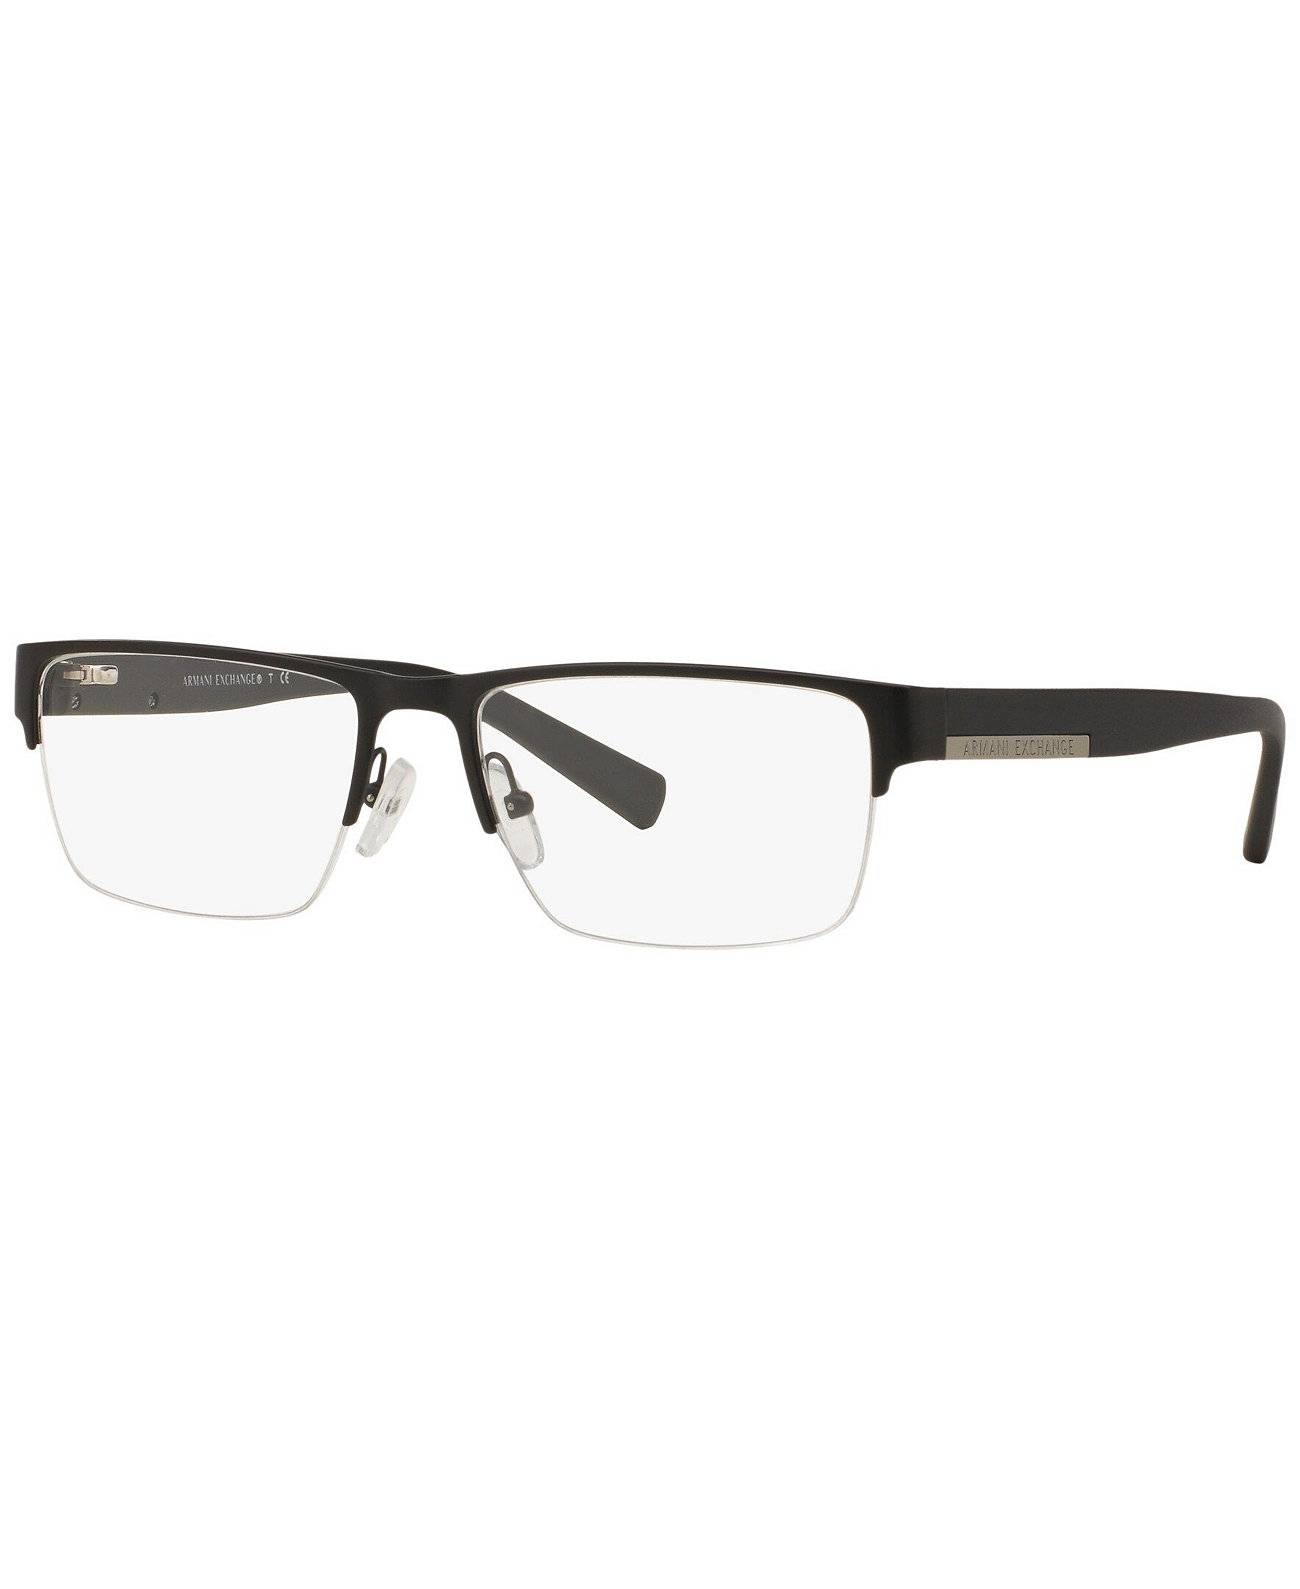 Мужские прямоугольные очки Armani Exchange AX1018 Armani